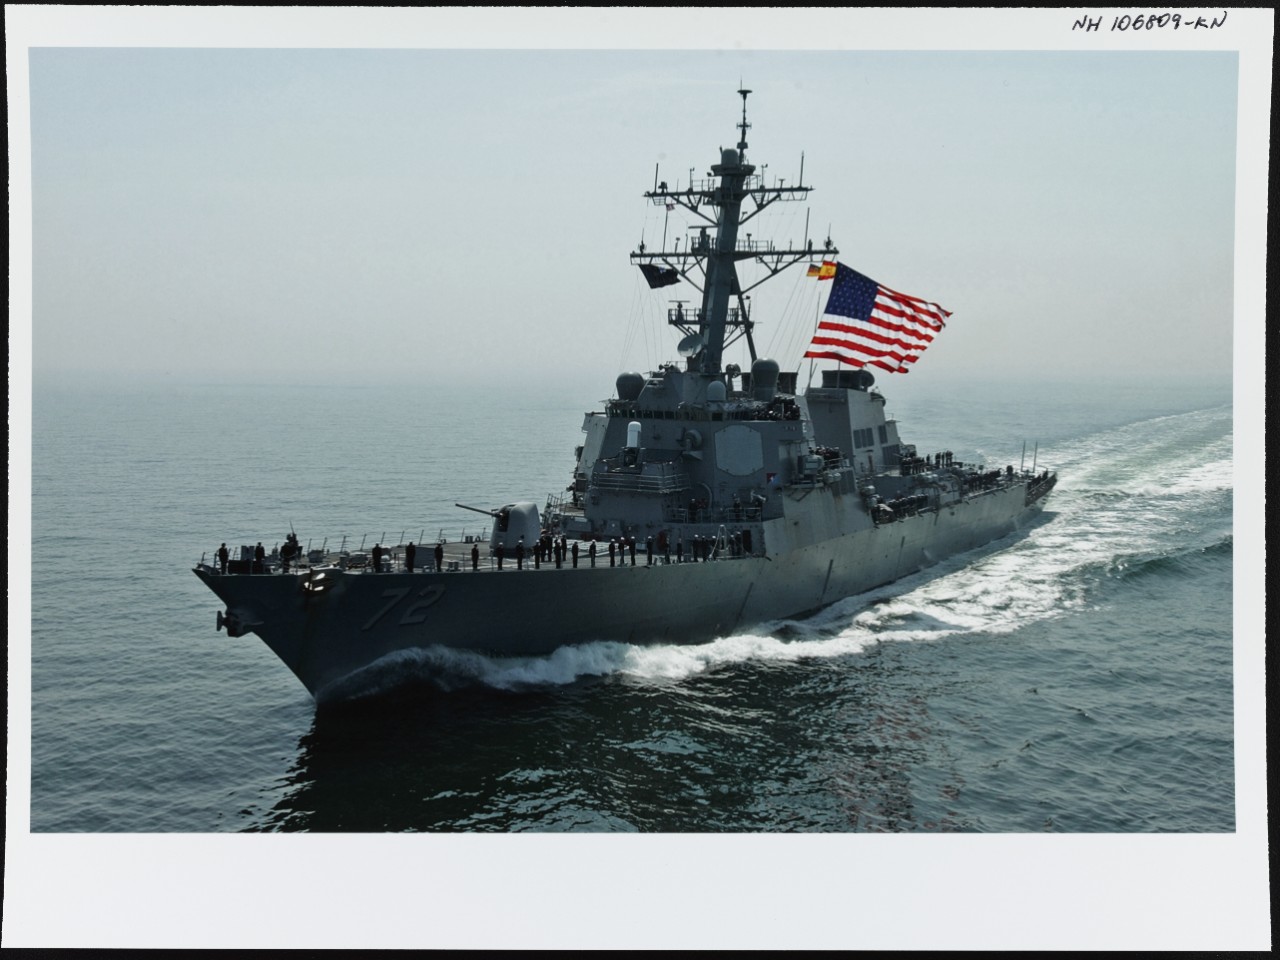 Photo # NH 106809-KN USS Mahan